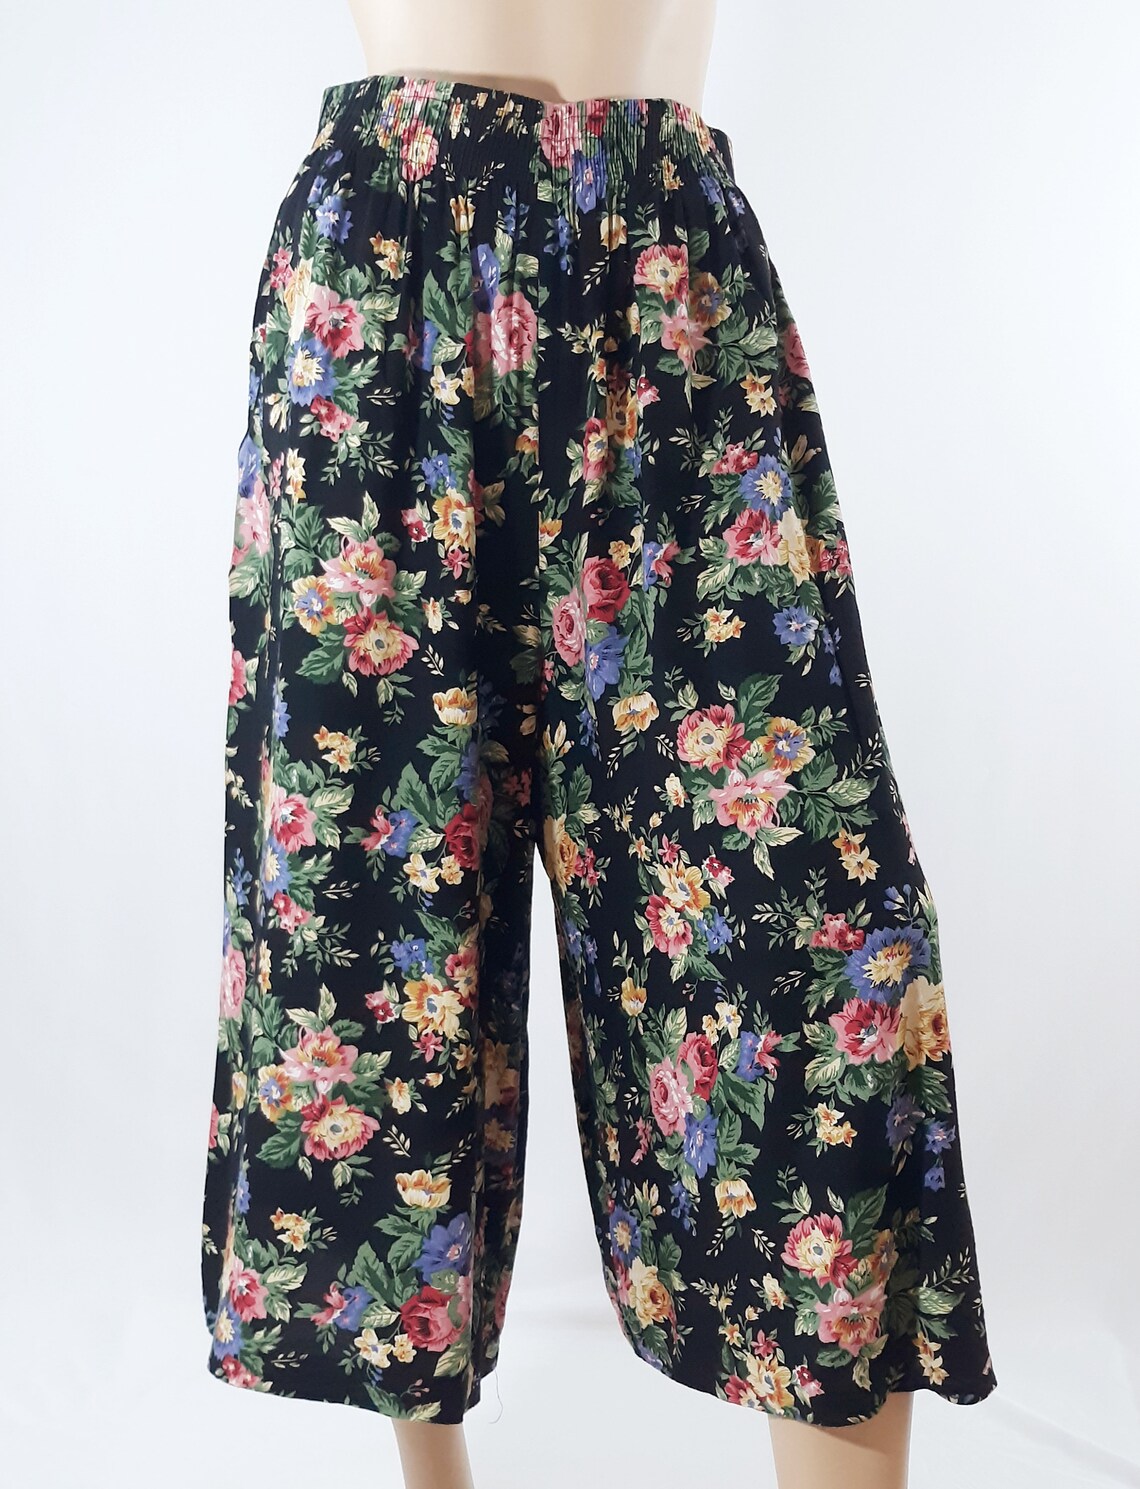 80's Women's Culottes Gauchos Pants Black Floral Boho | Etsy